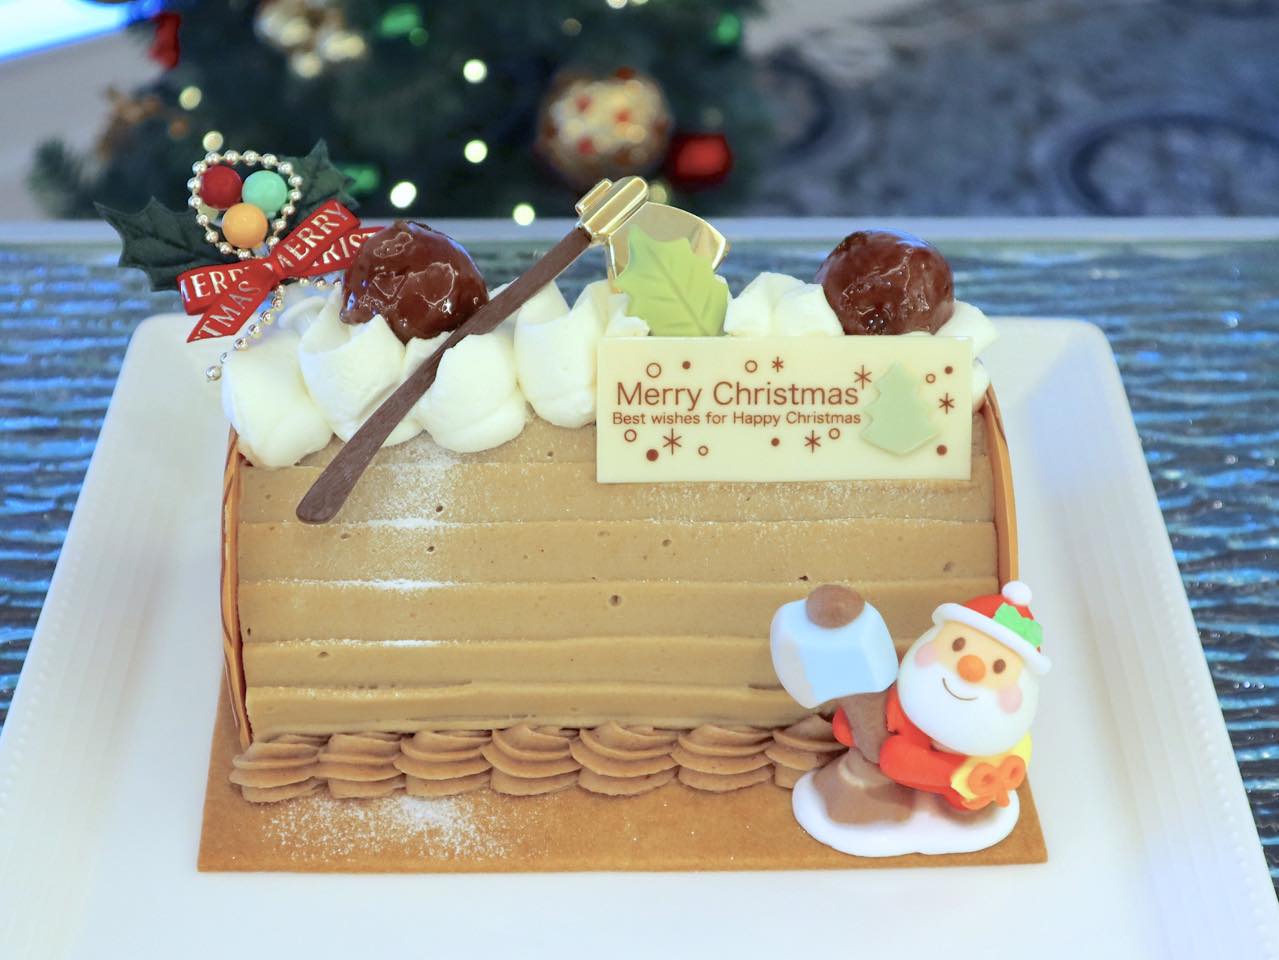 シェラトン・グランデ・トーキョーベイ・ホテル,舞浜シェラトン,クリスマスケーキコレクション2019